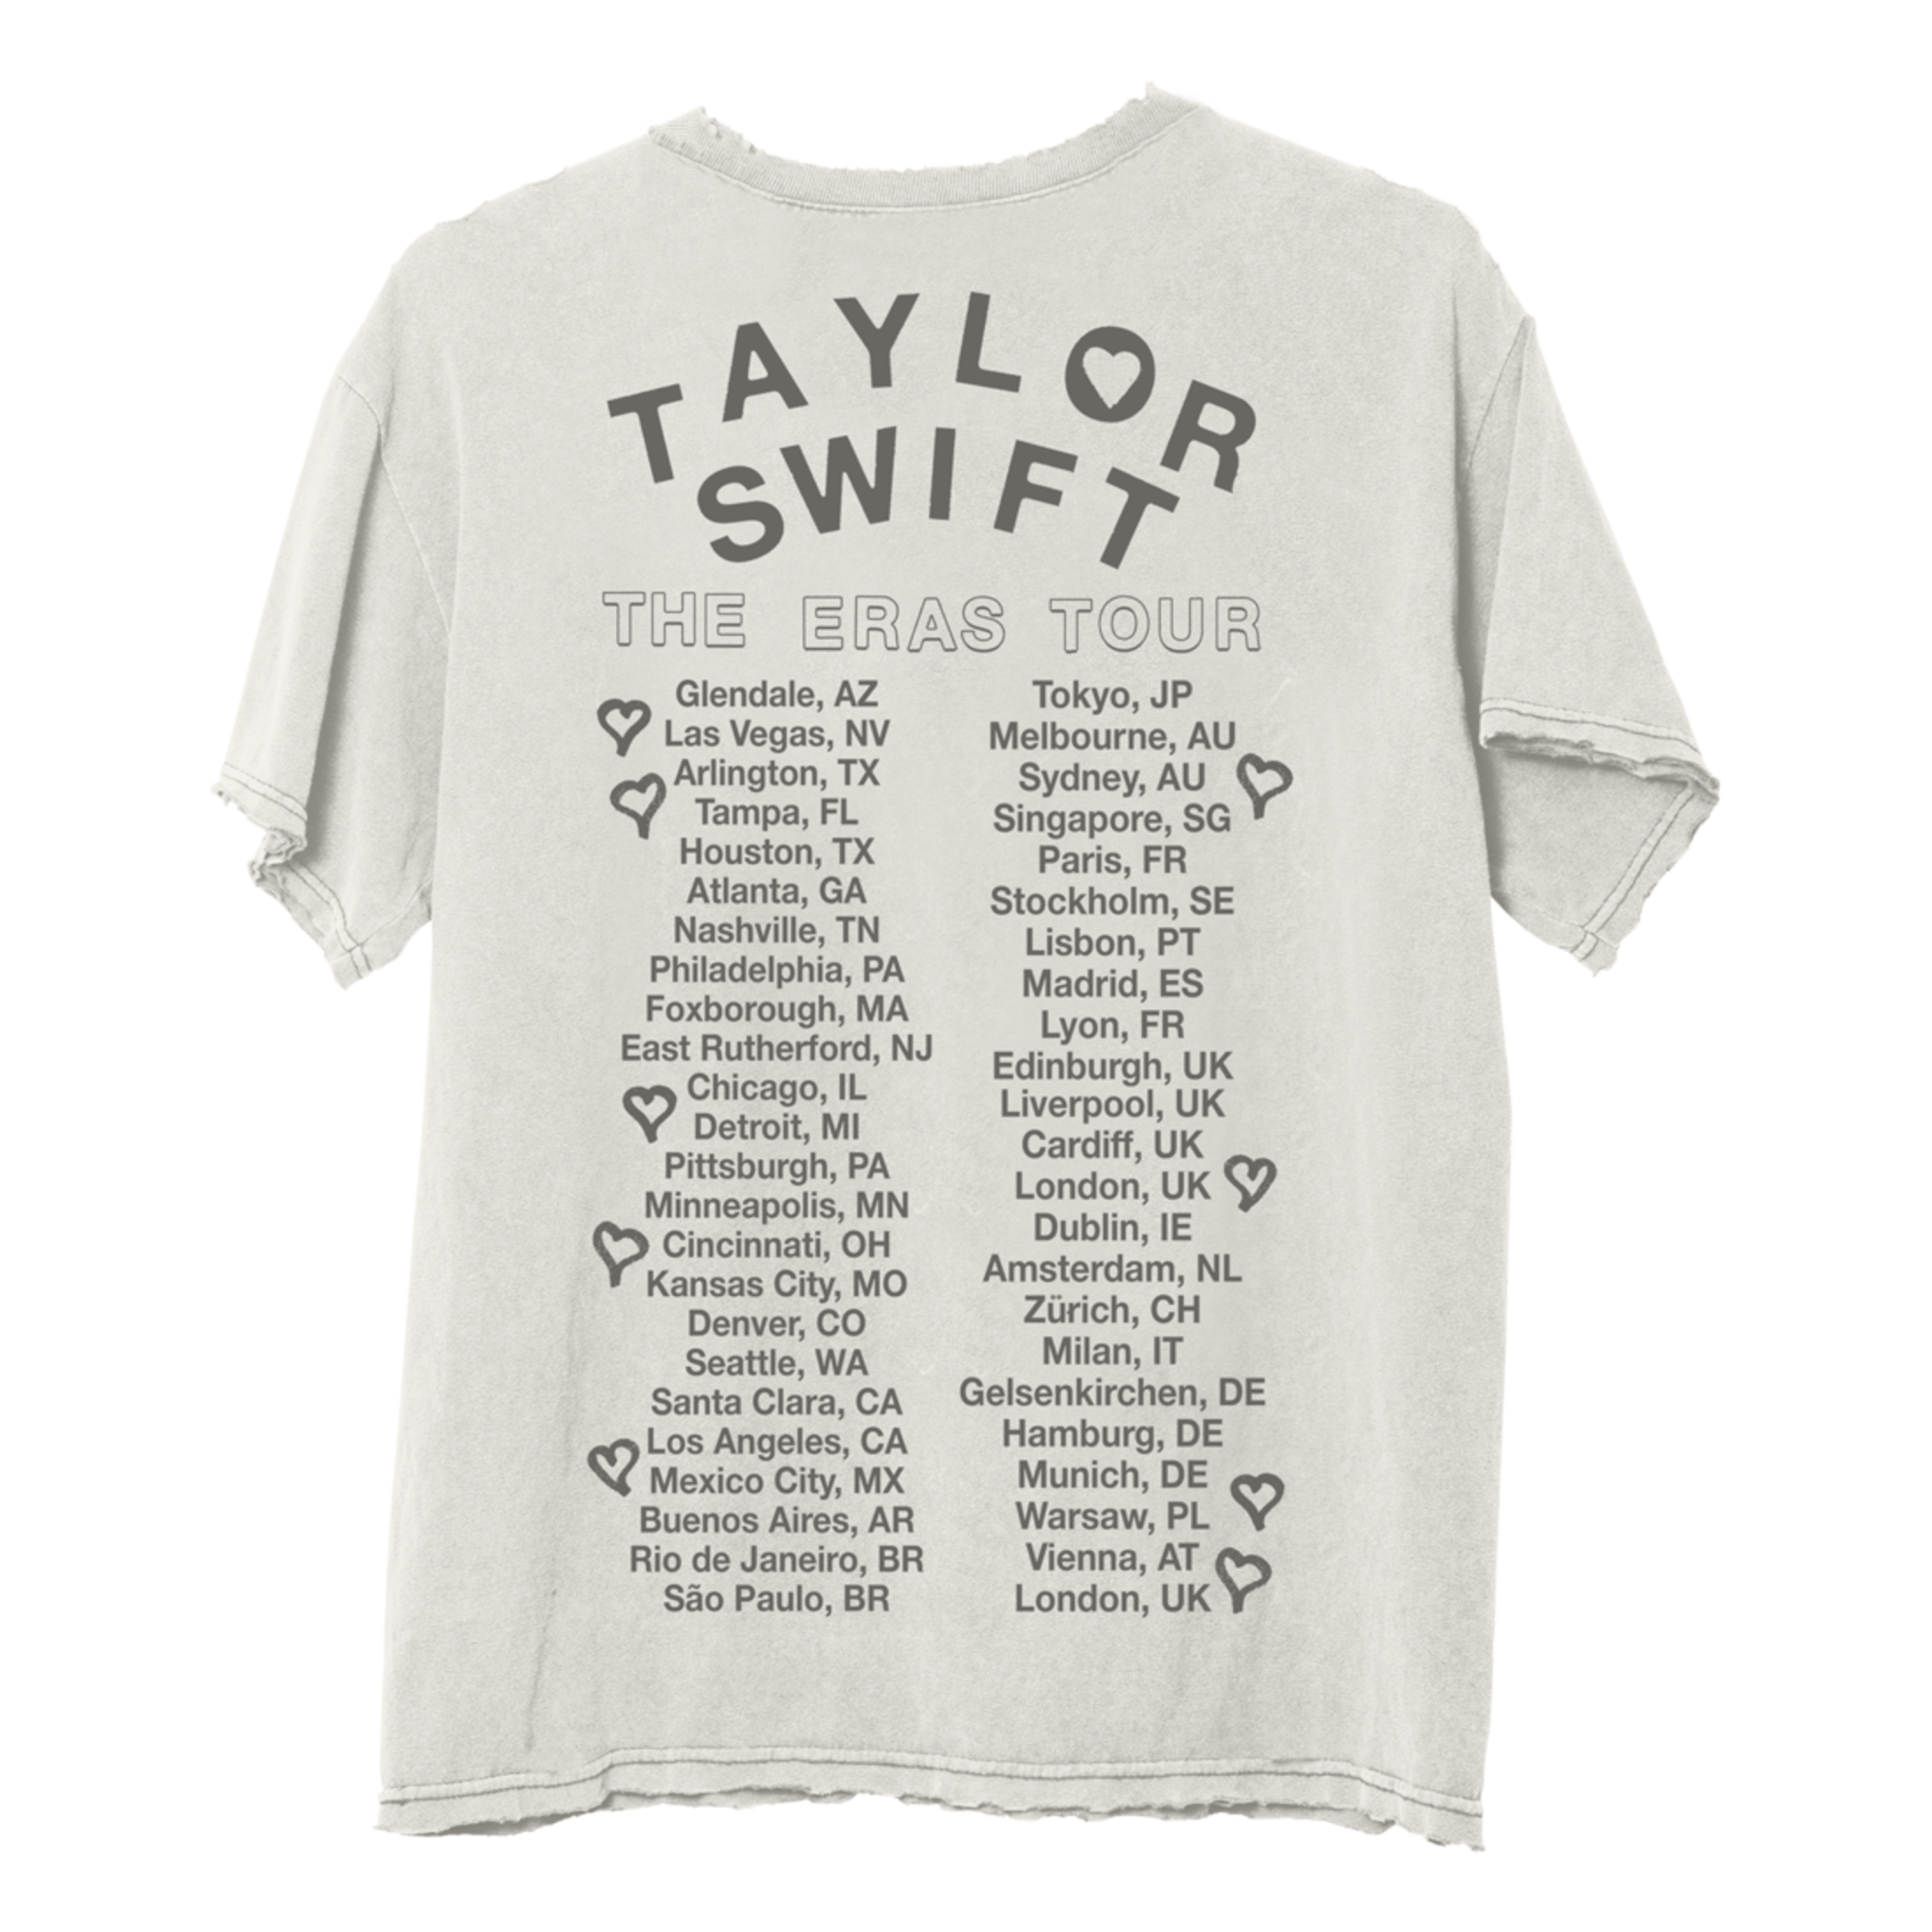 https://images.bravado.de/prod/product-assets/product-asset-data/taylor-swift/taylor-swift/products/503625/web/389587/image-thumb__389587__3000x3000_original/Taylor-Swift-Taylor-Swift-The-Eras-Tour-Photo-Oversized-T-Shirt-T-Shirt-beige-503625-389587.png